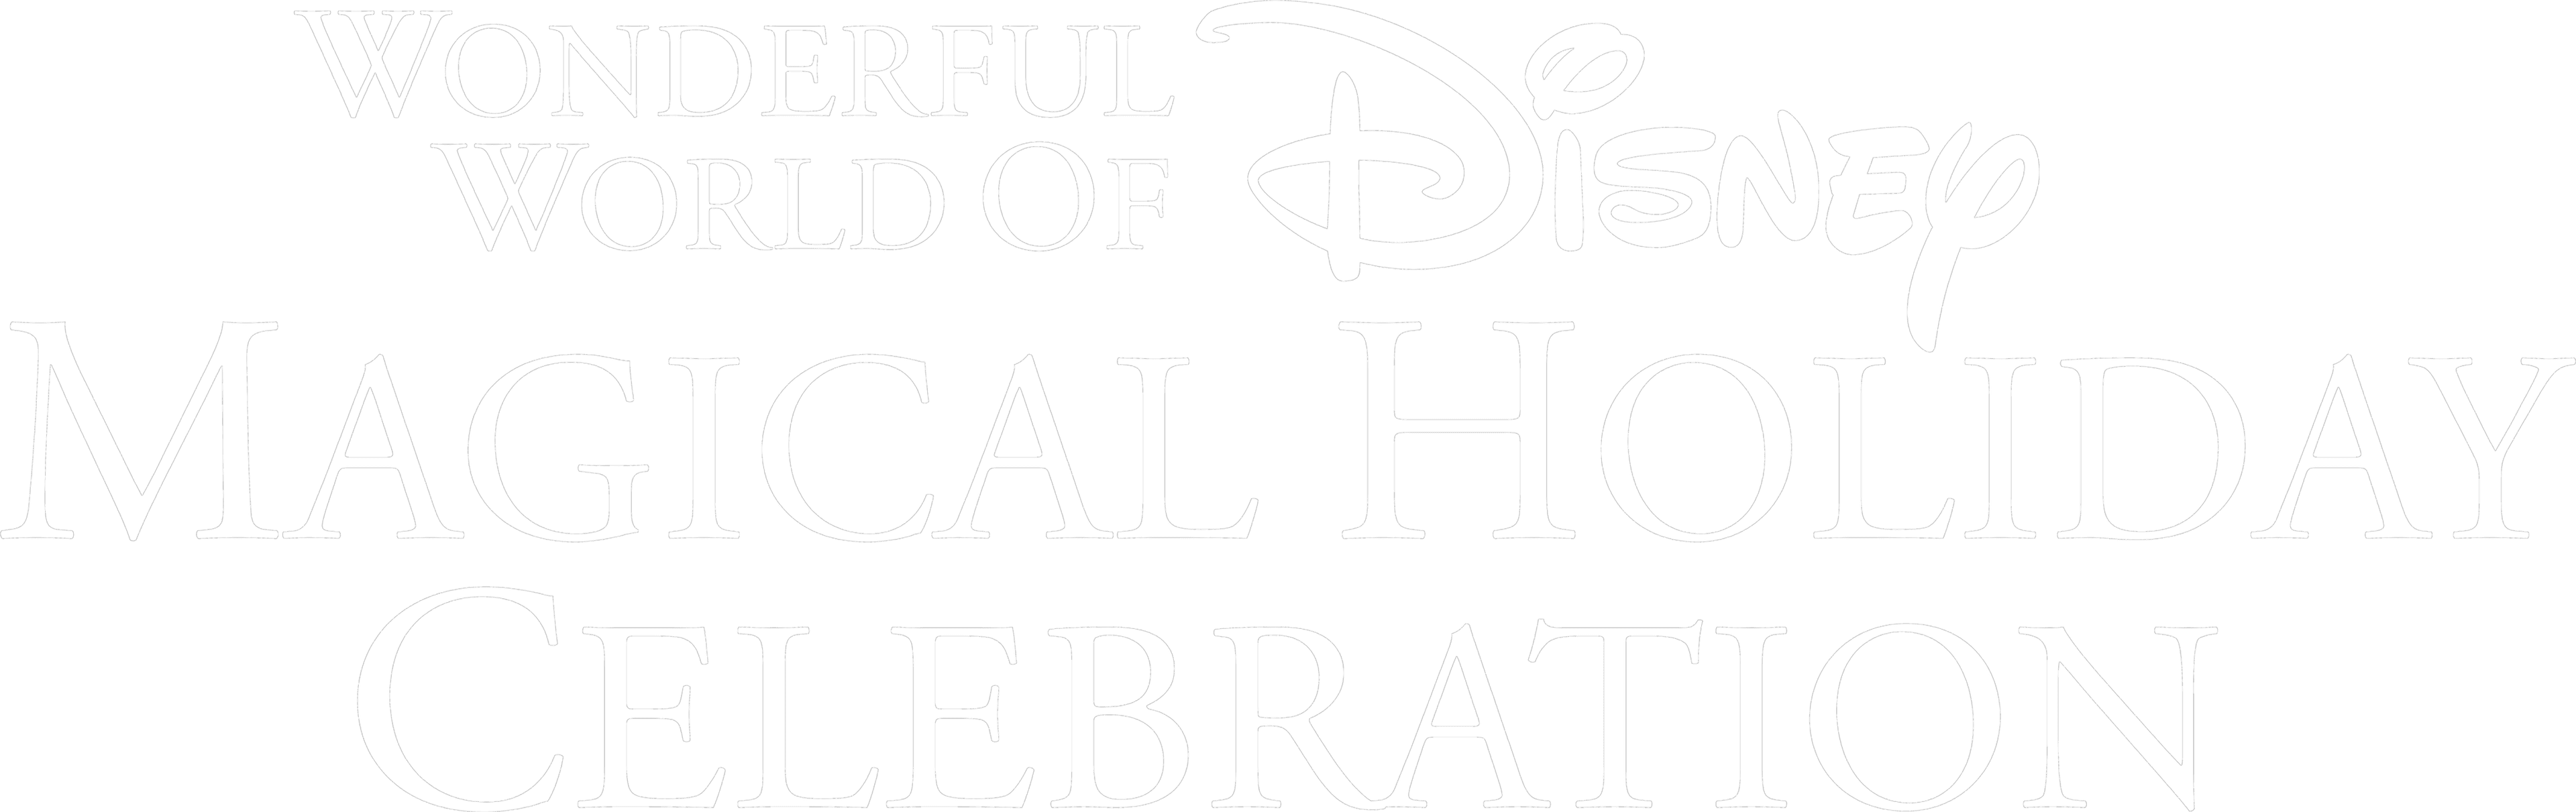 The Wonderful World of Disney: Magical Holiday Celebration logo